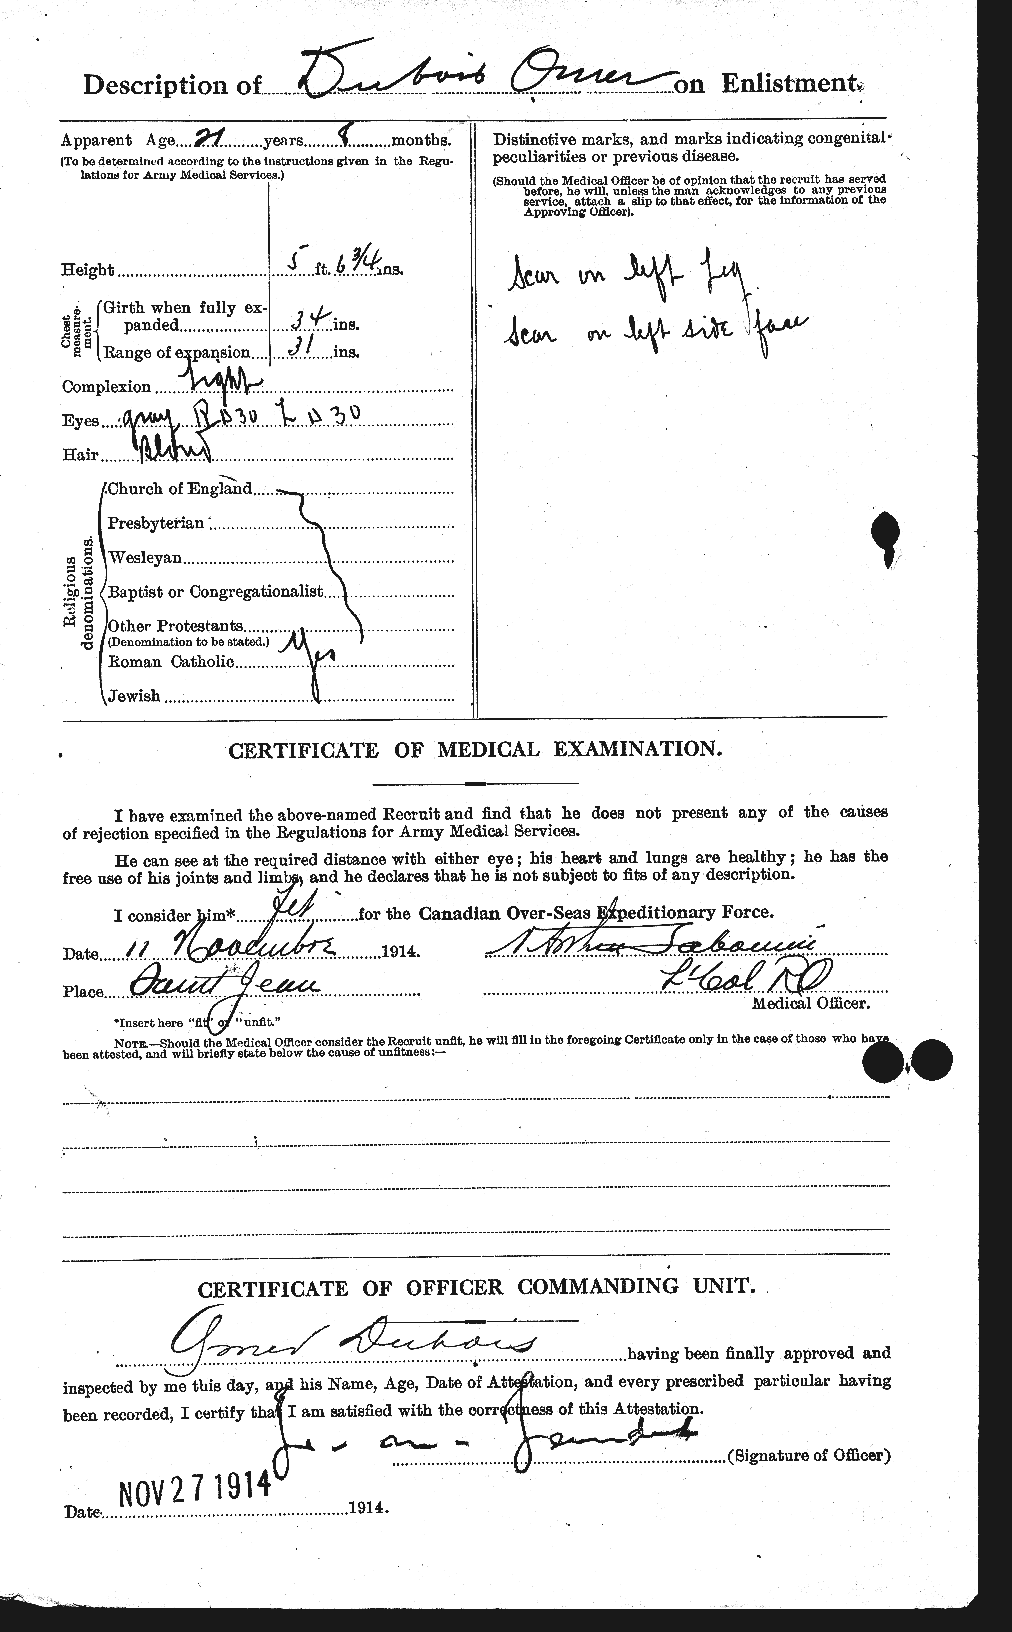 Dossiers du Personnel de la Première Guerre mondiale - CEC 300484b